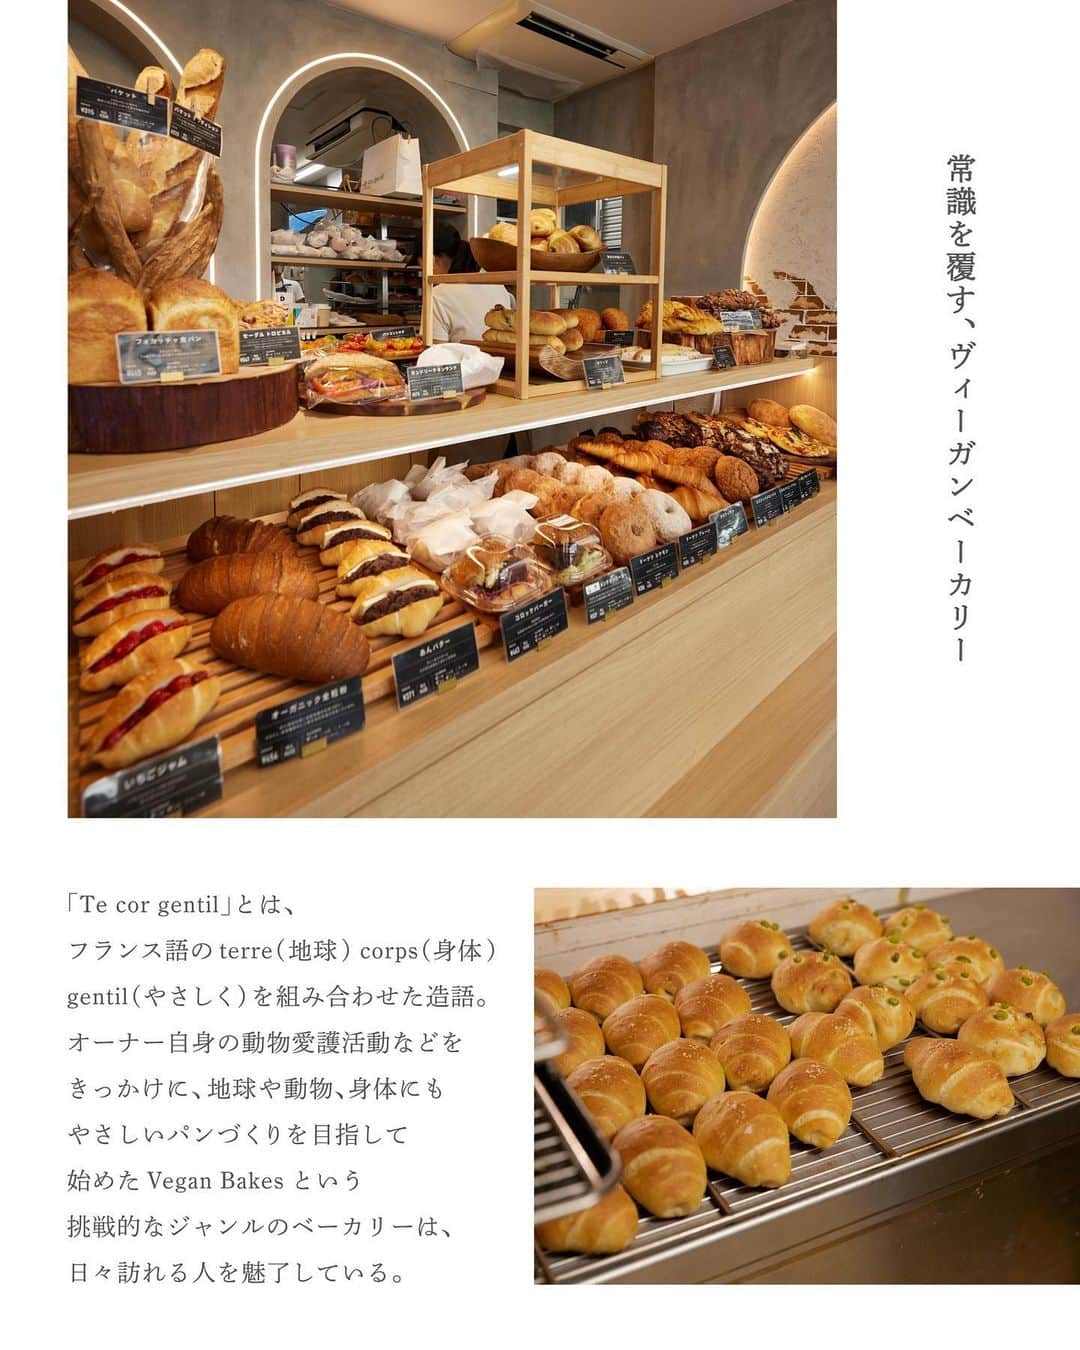 NEWoMan_officialさんのインスタグラム写真 - (NEWoMan_officialInstagram)「［🥐🥖🥯］  ― TOKYO BAKERY JOURNEY ―  10月2日（月）〜10月15日（日）の間ニュウマン新宿にて開催される「NEWoMan SHINJUKU パンまつり2023」。その中から、パン好きのインフルエンサーとのスペシャルコラボ商品を開発いただいた3ショップにフォーカスしお店の特徴やパンのこだわりをご紹介していきます。  ルーツも違えば、店主の魅力もそれぞれ。まるで旅をするような感覚でパン屋さんを巡っていくと、たくさんの心踊るストーリーに出逢えました。 パンまつりを、さらにおいしく楽しむために。参加ベーカリーの背景と秋の味覚で作ったコラボ商品について、ちょっとだけ予習しておきましょう。  - - - - - - - - - - - - - - - - - - - - - - - - -  # 03  Te cor gentil  @tecorgentil  最後のベーカリーは、麻布十番の駅からほど近い「Te cor gentil（テ コール ジャンティ）」。オーナーの動物愛護活動や環境保全に対する想いをきっかけにスタートしたヴィーガンパン専門のベーカリーです。パン作りに欠かせない乳製品など動物性食材を一切使わないメニューのラインアップは、クロワッサン、ハード系、惣菜パン、ドーナツなど種類も豊富。「ヴィーガンパンと言っても、そうでない方やアレルギーをお持ちの方、食事に制限のある方などにも幅広く召し上がっていただけます。クロワッサン1つ分がお得なギフトボックスもご用意していますので、お手土産などにもぜひ」とご担当の四宮さん。スタッフ1人1人がショップのコンセプトと真摯に向き合い、パン作りを楽しんでいる姿が印象的でした。  ■ Special Collaboration  >>> Cinna Mont Blanco～私が誰より一番～　¥1,000 tax incl. 食べることがだいすきで、趣味はパン屋さんとカフェ巡り、365日パン・スイーツを食べているというライターの坂本リエさん（@r11echan）とTe cor gentilが「まるごと、秋の味覚」をテーマにスペシャルコラボ 👨‍🍳🎃コラボ商品の詳細は後日投稿予定です。素晴らしいビジュアルの全貌をお楽しみに！  ＼ リエさん’s commet ／ 私のすきなもの、栗・あんこ・クリーム・シナモン・アーモンドをすべて入れてもらったわがままで欲張りな逸品。生地はガリガリ＆ザクザクとした食感がすきなので、クロッカンに仕上げました。高さを出し、金箔で華やかさをプラス、スタイリッシュなビジュアルがフォトジェニック！まちがいなく私が誰より1番！  ＼ Te cor gentil’s commet ／ 当店のディレクターと元々仲良くさせていただいていた坂本リエさんと、今回コラボさせていただきました。サイコロ状にカットしたクロッカンをぎっしりと詰めていく作業が大変でしたが、うまく上のモンブランとマッチするものが出来ました。乳、卵、バターを使っていませんが、とても満足感のある一品だと思います！  - - - - - - - - - - - - - - - - - - - - - - - - -  ■ Shop Information Te cor gentil 東京都港区麻布十番2-18-8 グランルーブル麻布十番1F 営業時間：水〜金 10:00〜18:00、土日 10:00〜17:00 定休日：月曜・火曜 ※ シーズンや時間によって店頭に並ぶパンの種類は異なります。 　 また、売り切れの際はご容赦ください。   ■ NEWoMan SHINJUKU パンまつり2023 〔開催日程〕 10月2日(月)〜10月15日(日) 〈Te cor gentil：10月10日（火）～10月12日（木）） 11:00〜20:00 ※一部営業時間が異なるショップがございます。  〔開催場所〕 　ニュウマン新宿 館内 　2F エキナカ　パンまつり特設会場 　（JR新宿駅新南改札内 イベントスペース）   〔イベント内容〕 🥐 人気ベーカリー12ショップが参加する限定ポップアップショップを開催！ 　 今年のテーマは「まるごと、秋の味覚」。各店の秋限定商品を要CHECK！ 　 参加ショップと出店スケジュールはストーリーズのハイライトよりご覧ください。 🍞 Instagramでは各ベーカリー自慢のスペシャリテをご紹介予定！ 🥨 対象の3ショップで購入いただくと、抽選で 　「パンのお供 or エキナカ食品ショップで使えるクーポン」がもらえる 　デジタルスタンプラリーを開催！ - - - - - - - - - - - - - - - - - - - - -   #Tecorgentil #テコールジャンティ #ヴィーガン #vegan #ヴィーガンパン #ヴィーガンケーキ #ベーカリー #bakery #麻布十番グルメ #東京パン屋 #パン屋巡り #パンまつり #ニュウマン新宿パンまつり #BREADFESTIVAL  #パン #パンマルシェ #bread #新宿 #shinjuku #tokyo #instabread #ニュウマン新宿」9月27日 10時45分 - newoman_shinjuku